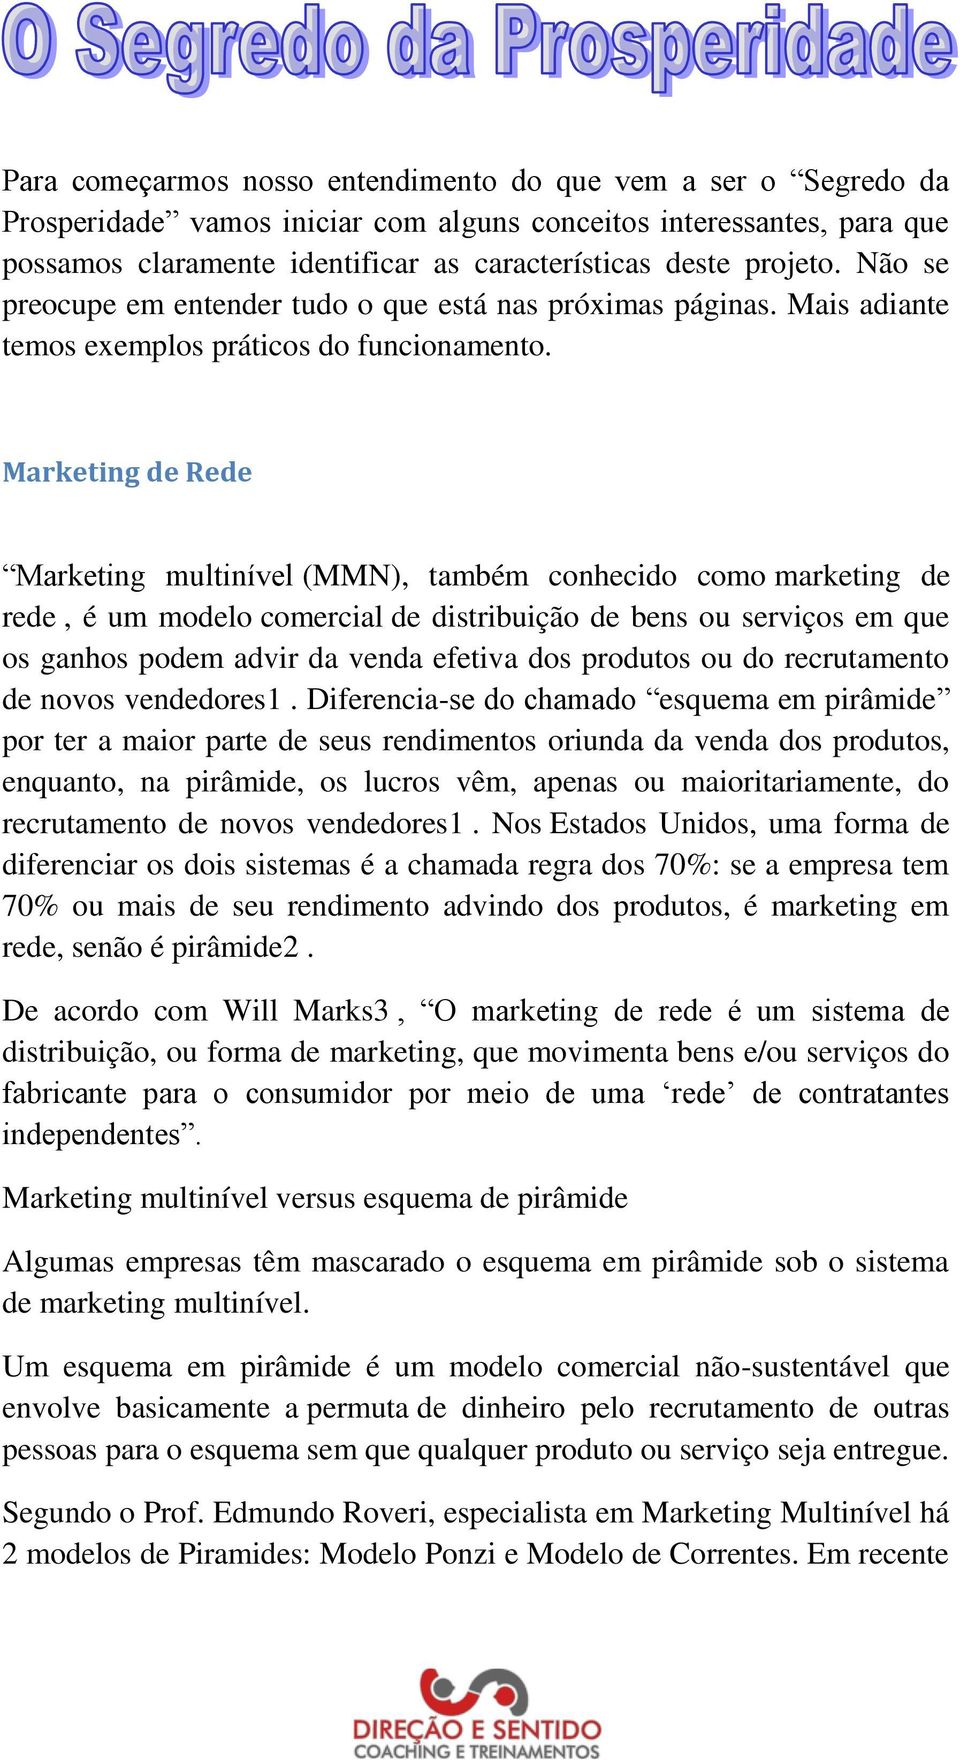 Marketing de Rede Marketing multinível (MMN), também conhecido como marketing de rede, é um modelo comercial de distribuição de bens ou serviços em que os ganhos podem advir da venda efetiva dos